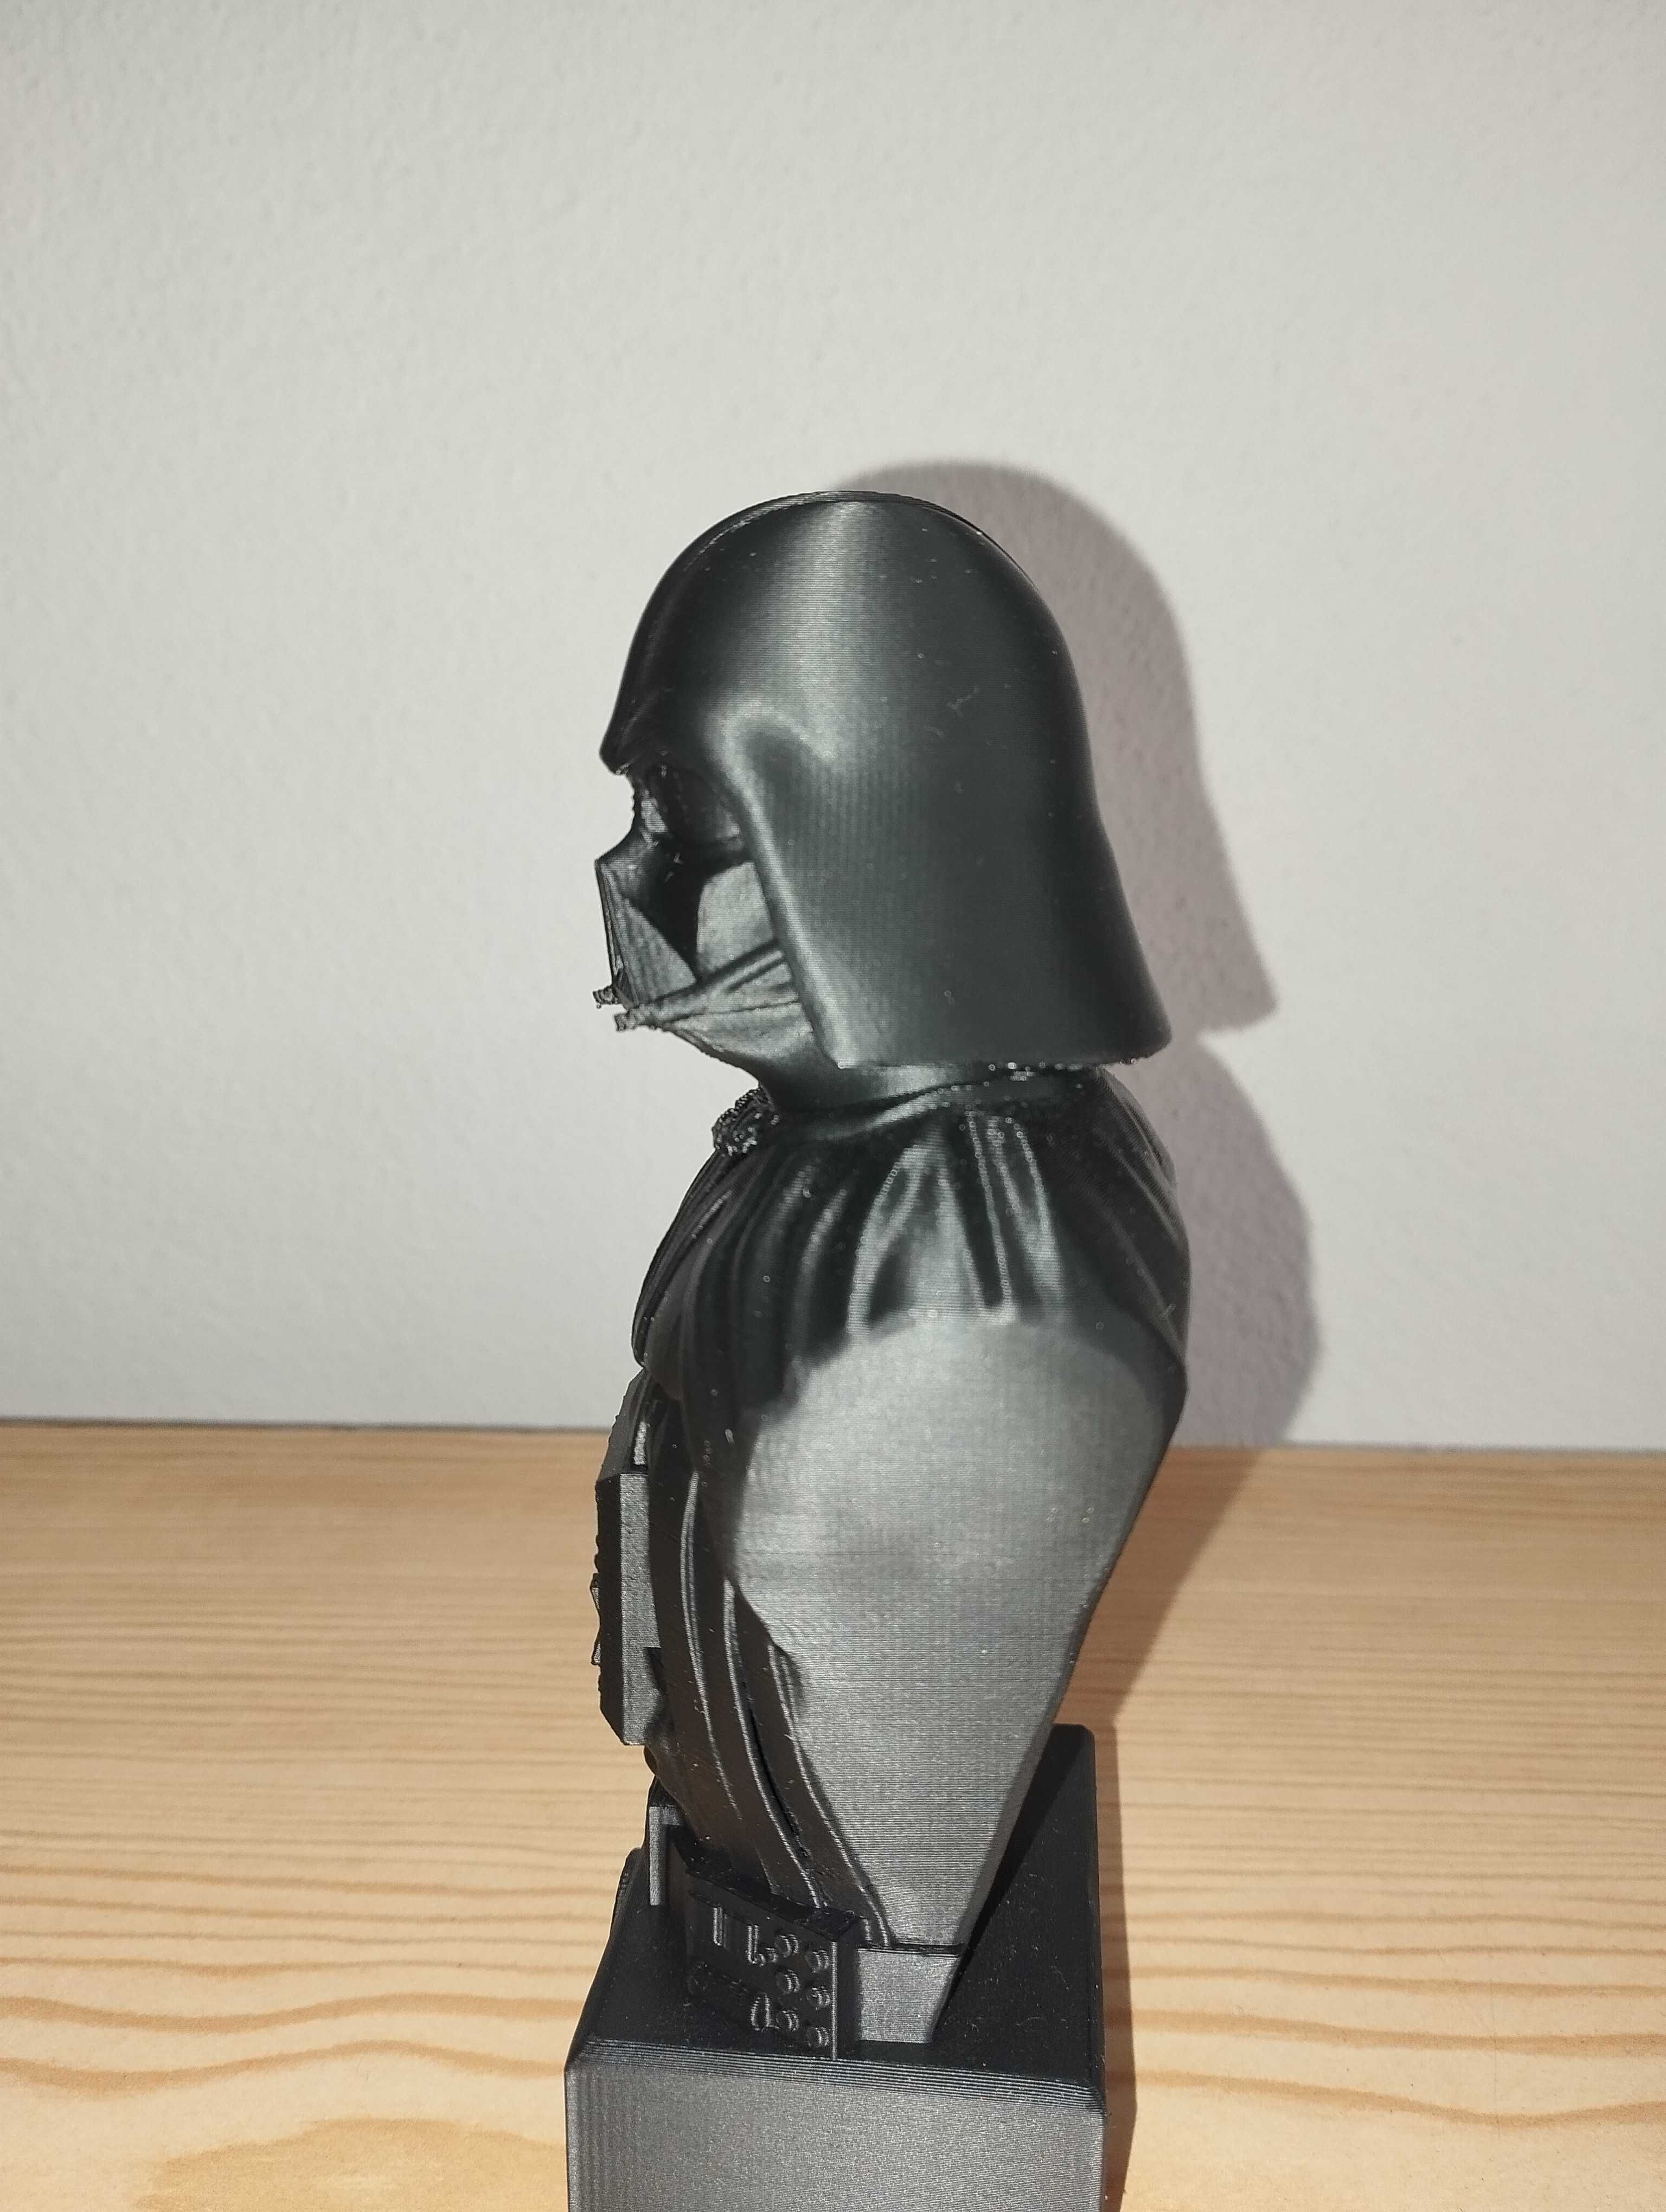 Darth Vader - Star Wars 3D printing